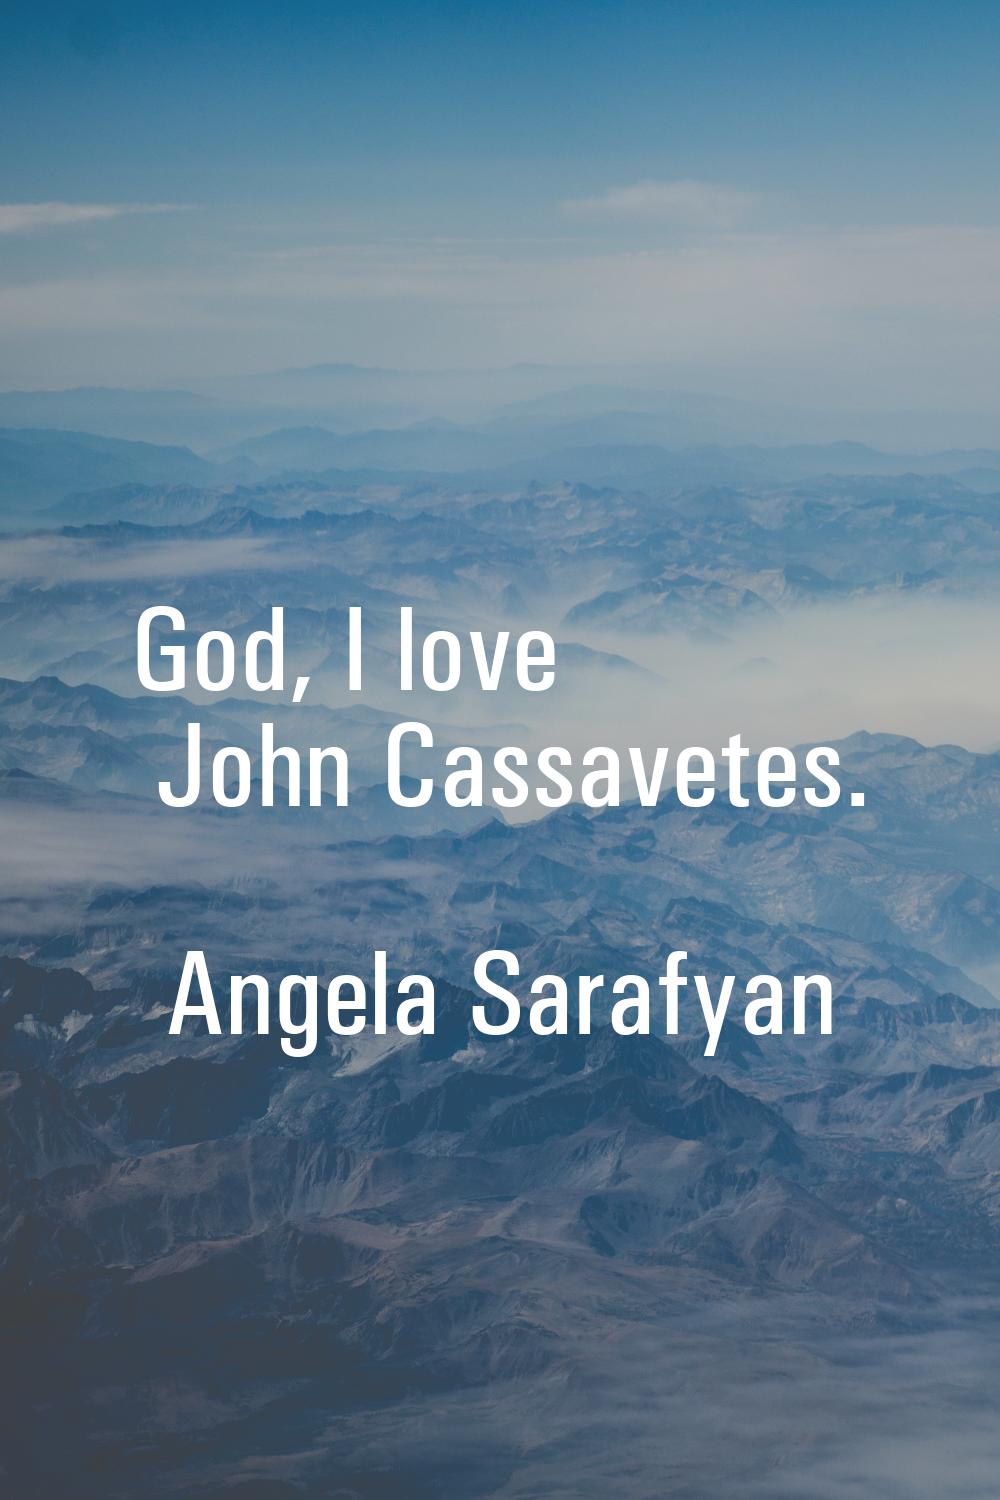 God, I love John Cassavetes.